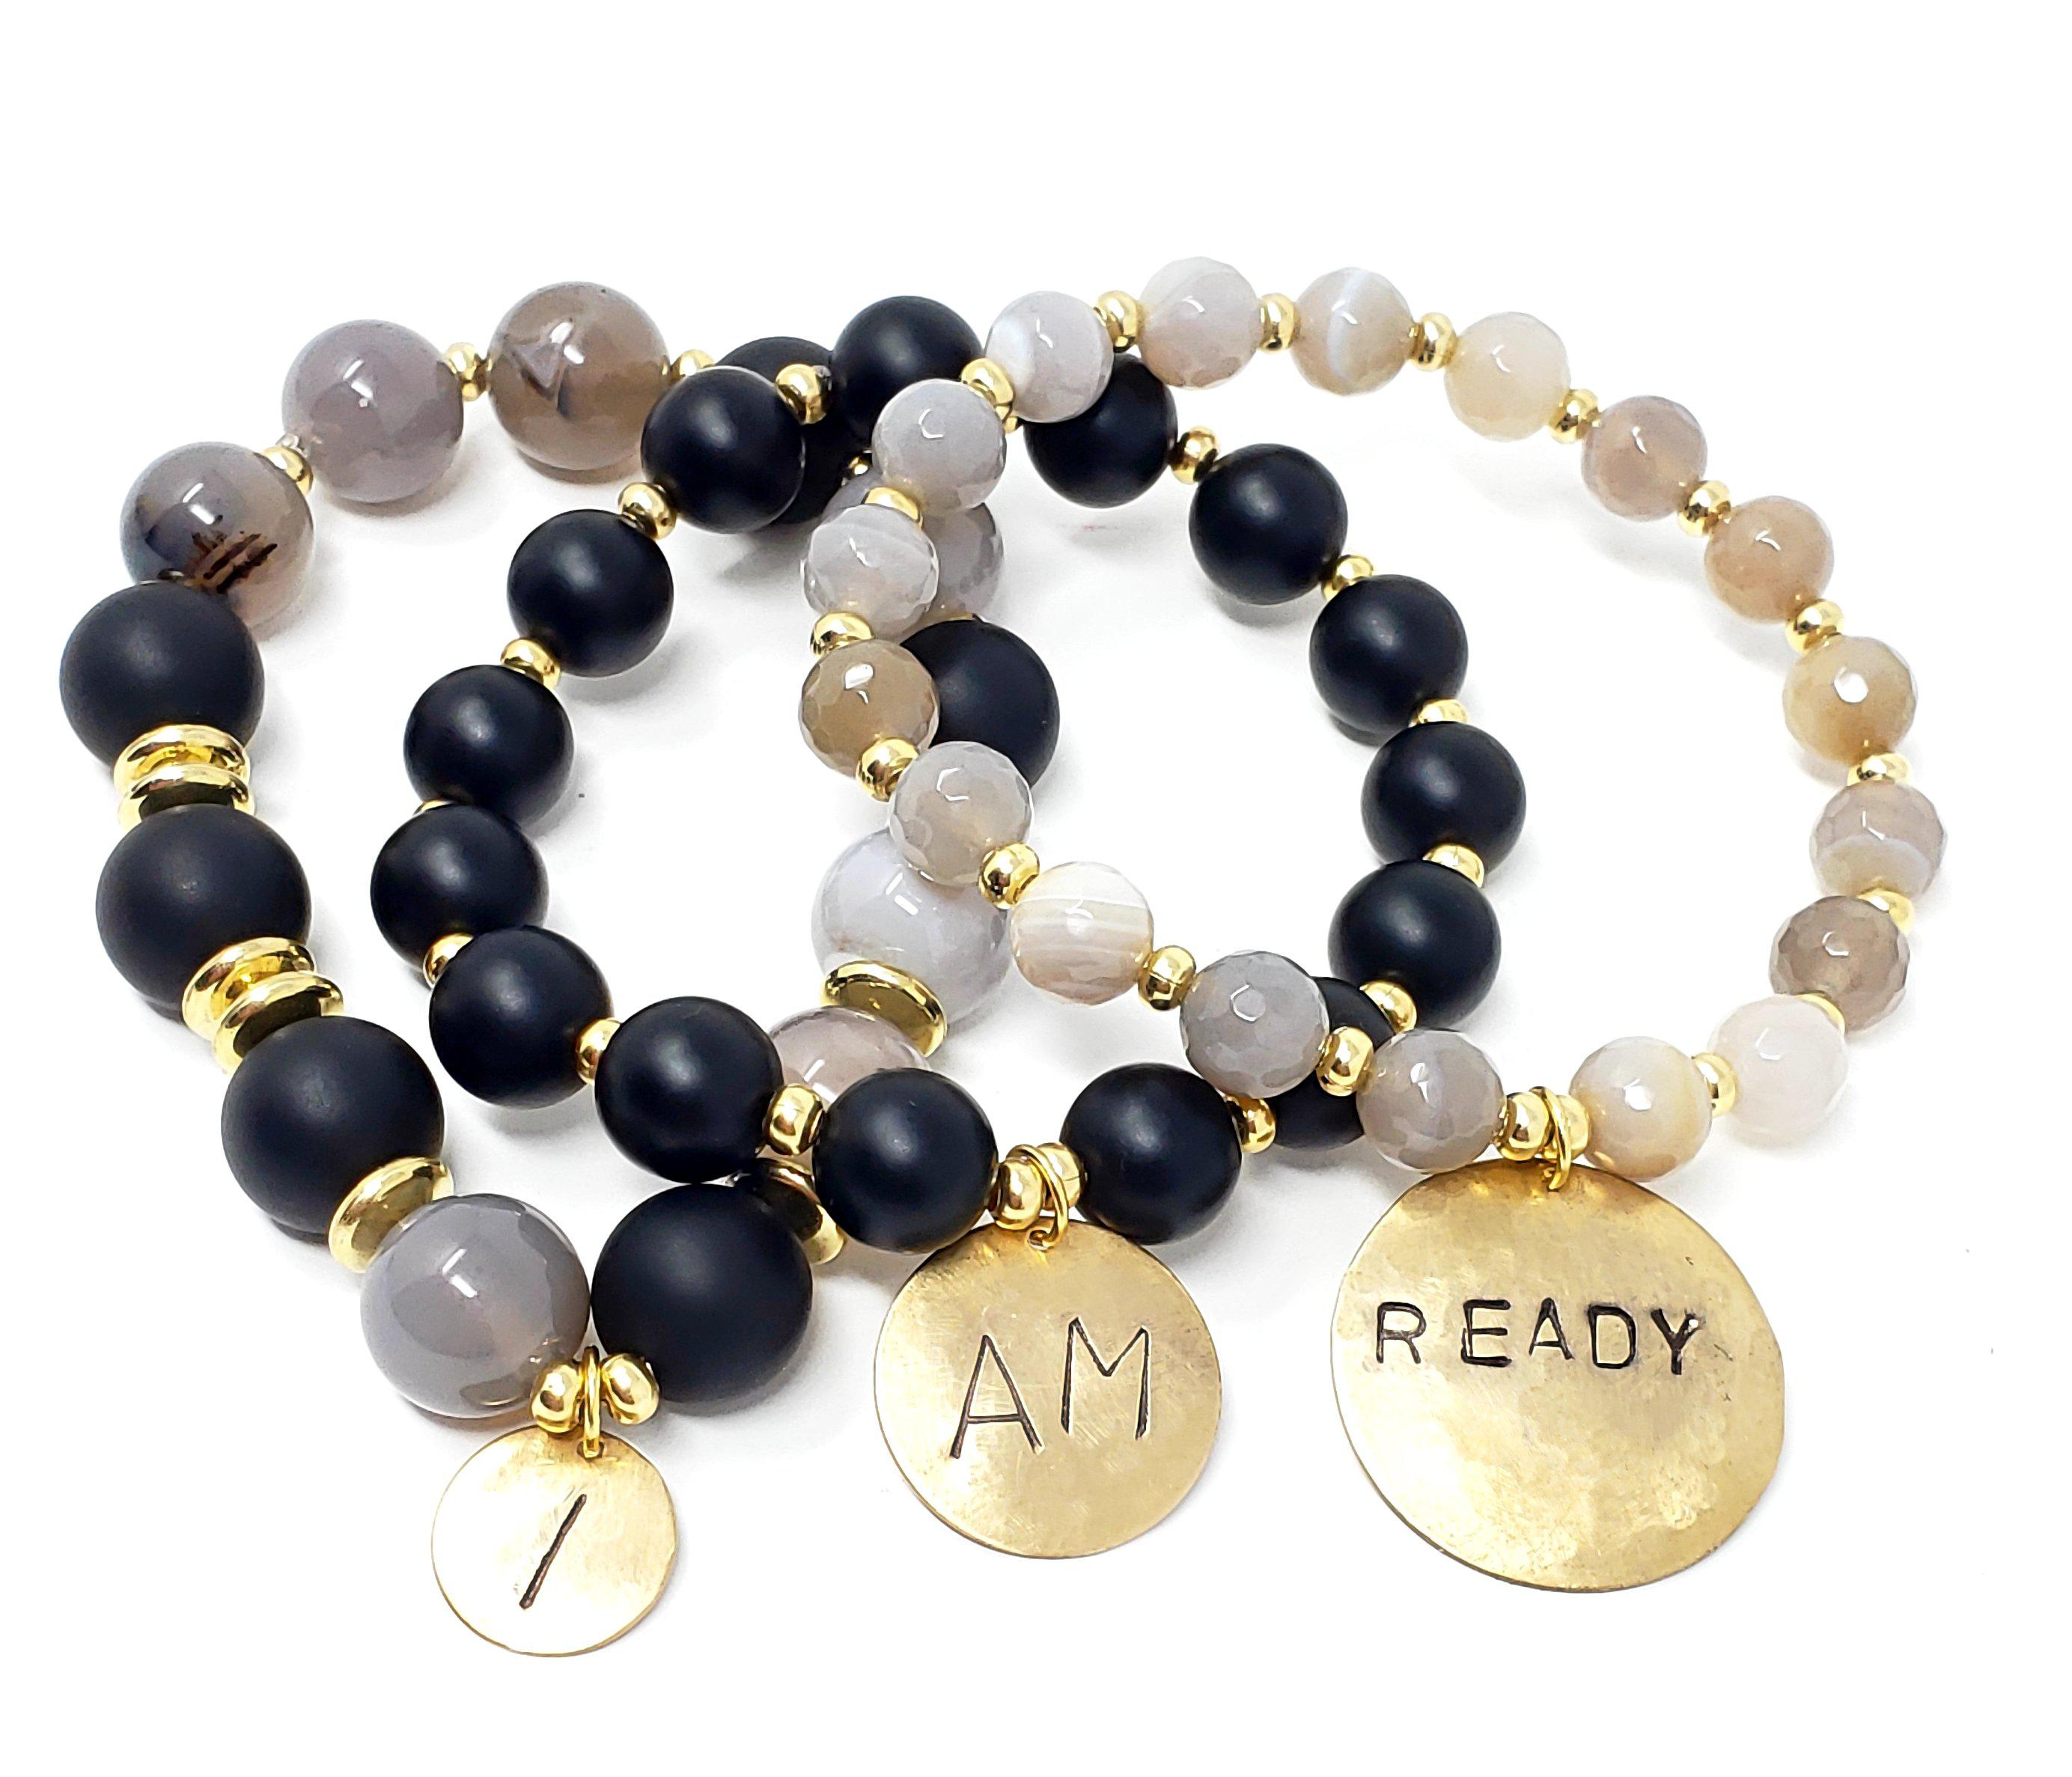 "I Am Ready" Affirmation Bracelets